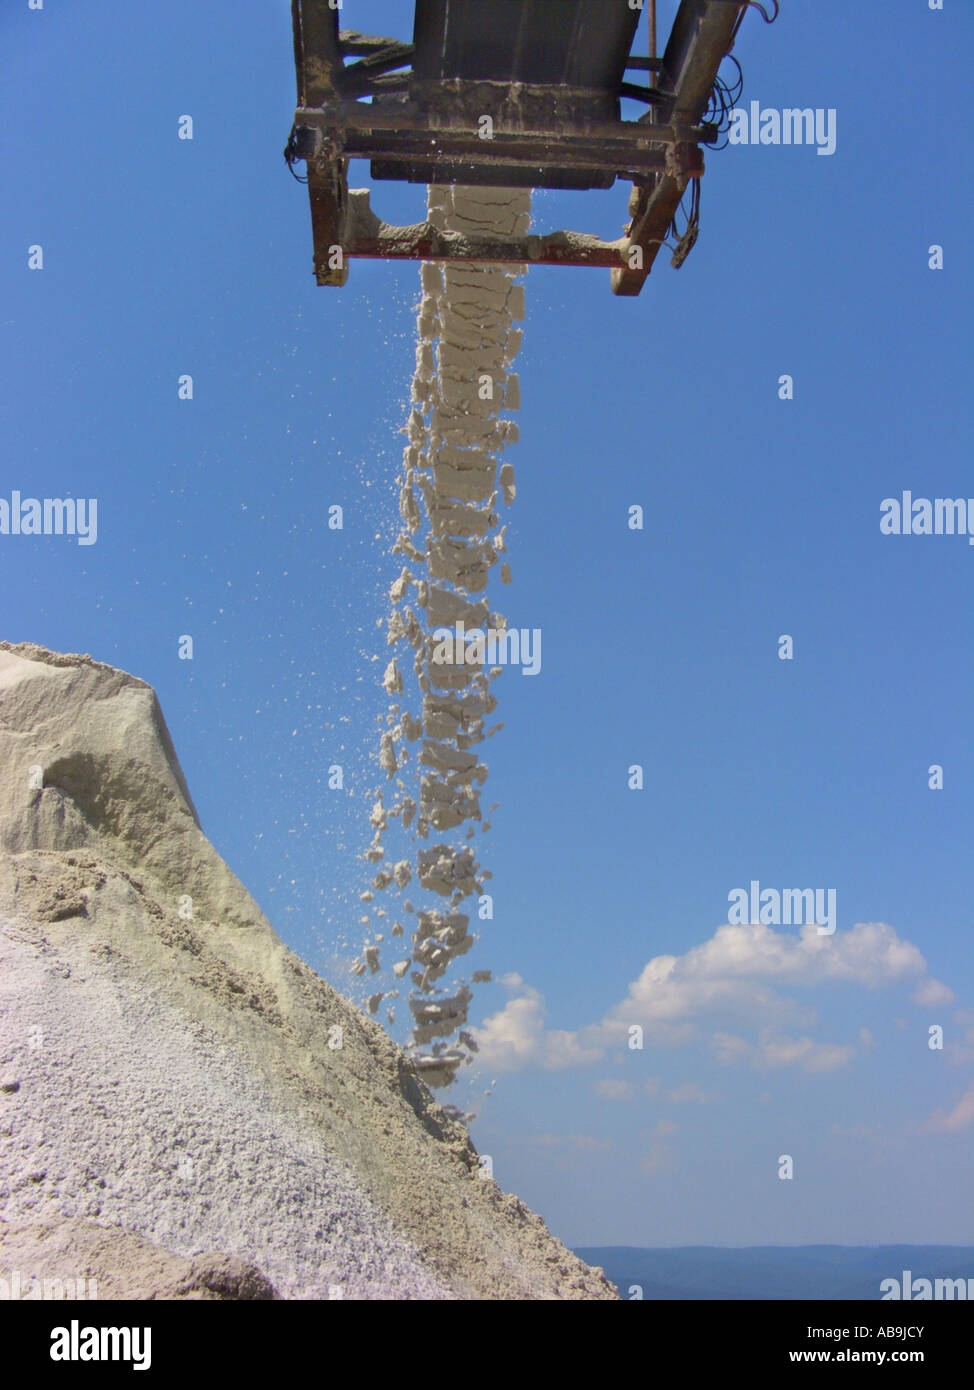 mining of potash, conveyor band with overburden salt, Germany, Hesse, Werragebiet, Heringen Stock Photo